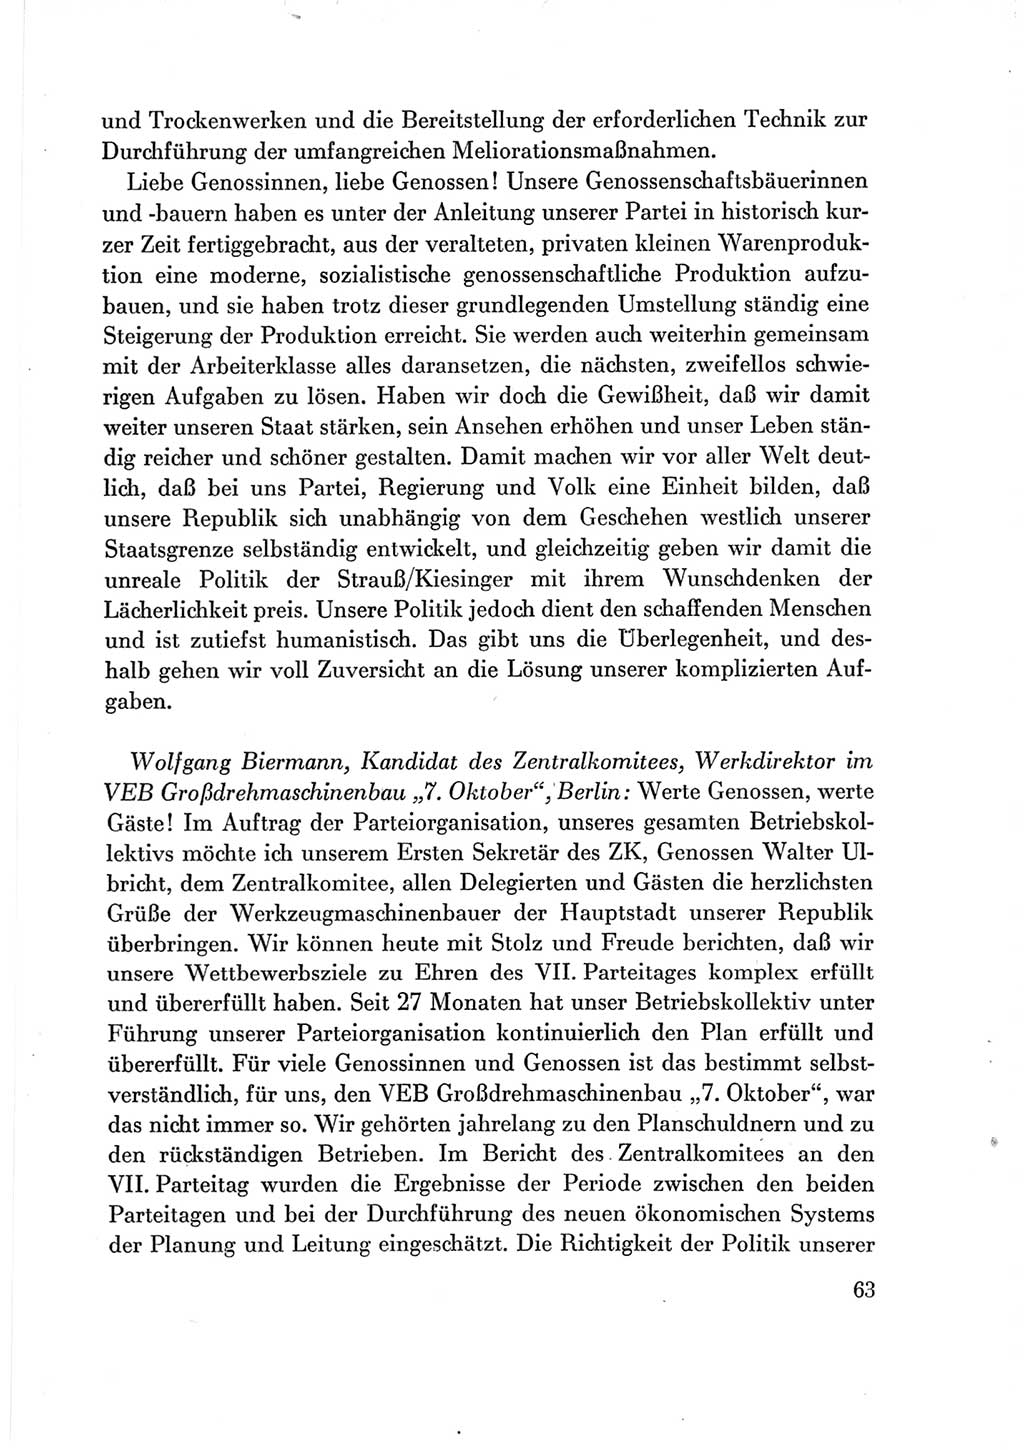 Protokoll der Verhandlungen des Ⅶ. Parteitages der Sozialistischen Einheitspartei Deutschlands (SED) [Deutsche Demokratische Republik (DDR)] 1967, Band Ⅲ, Seite 63 (Prot. Verh. Ⅶ. PT SED DDR 1967, Bd. Ⅲ, S. 63)